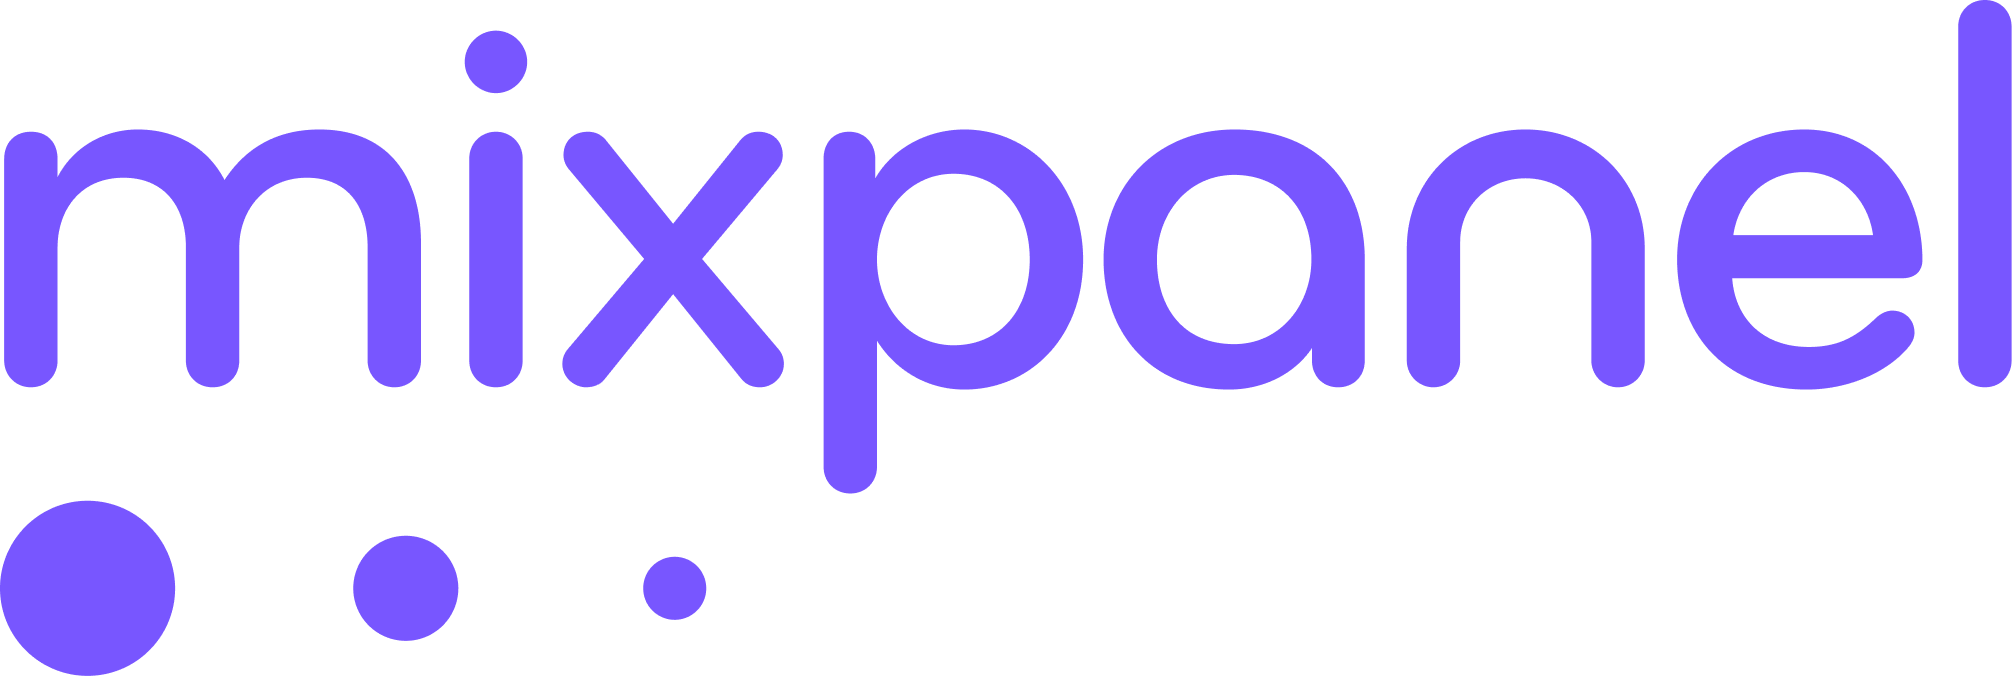 Mixpanel_full_logo___purple.png